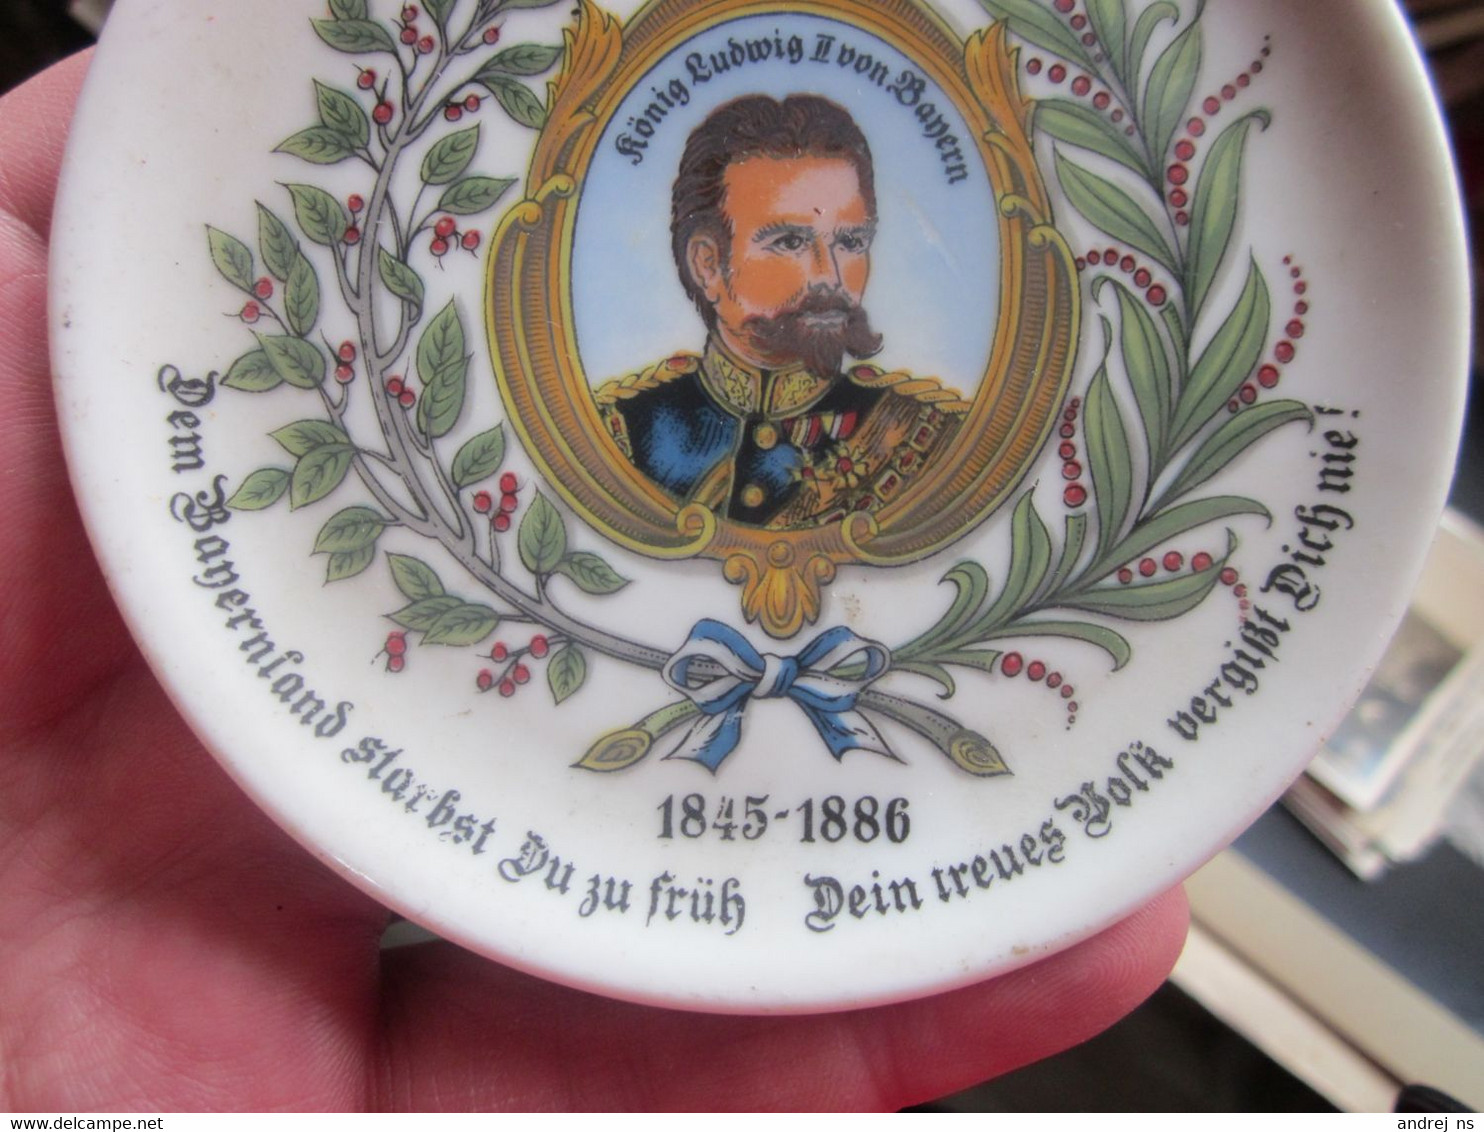 Old Decorative Plate Konigreich Bayern Konig Ludwig II Von Bayern 1845 1886 Diameter 10 Cm - Teller